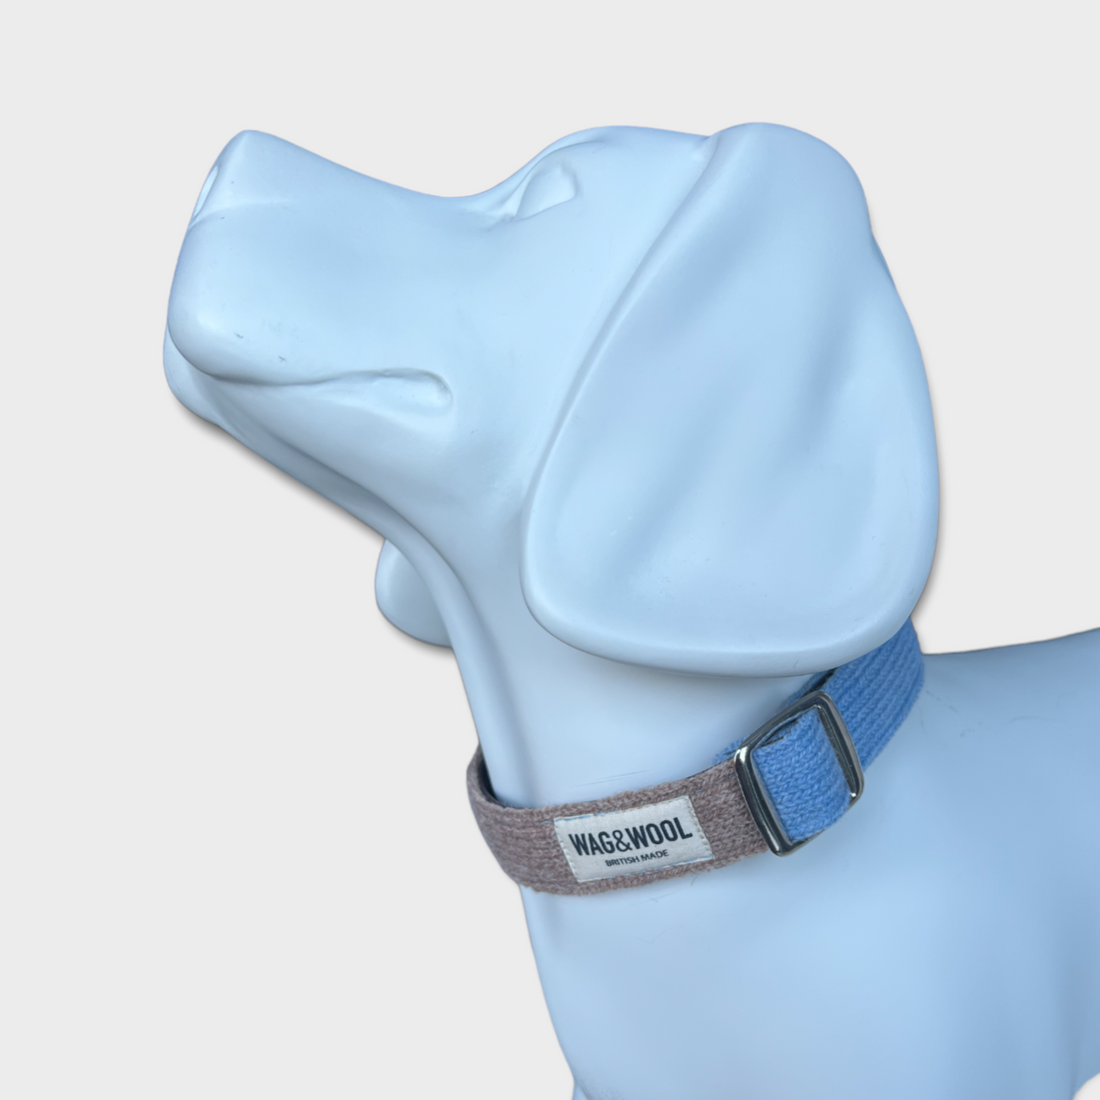 mannequin wearing a light blue dog collar 